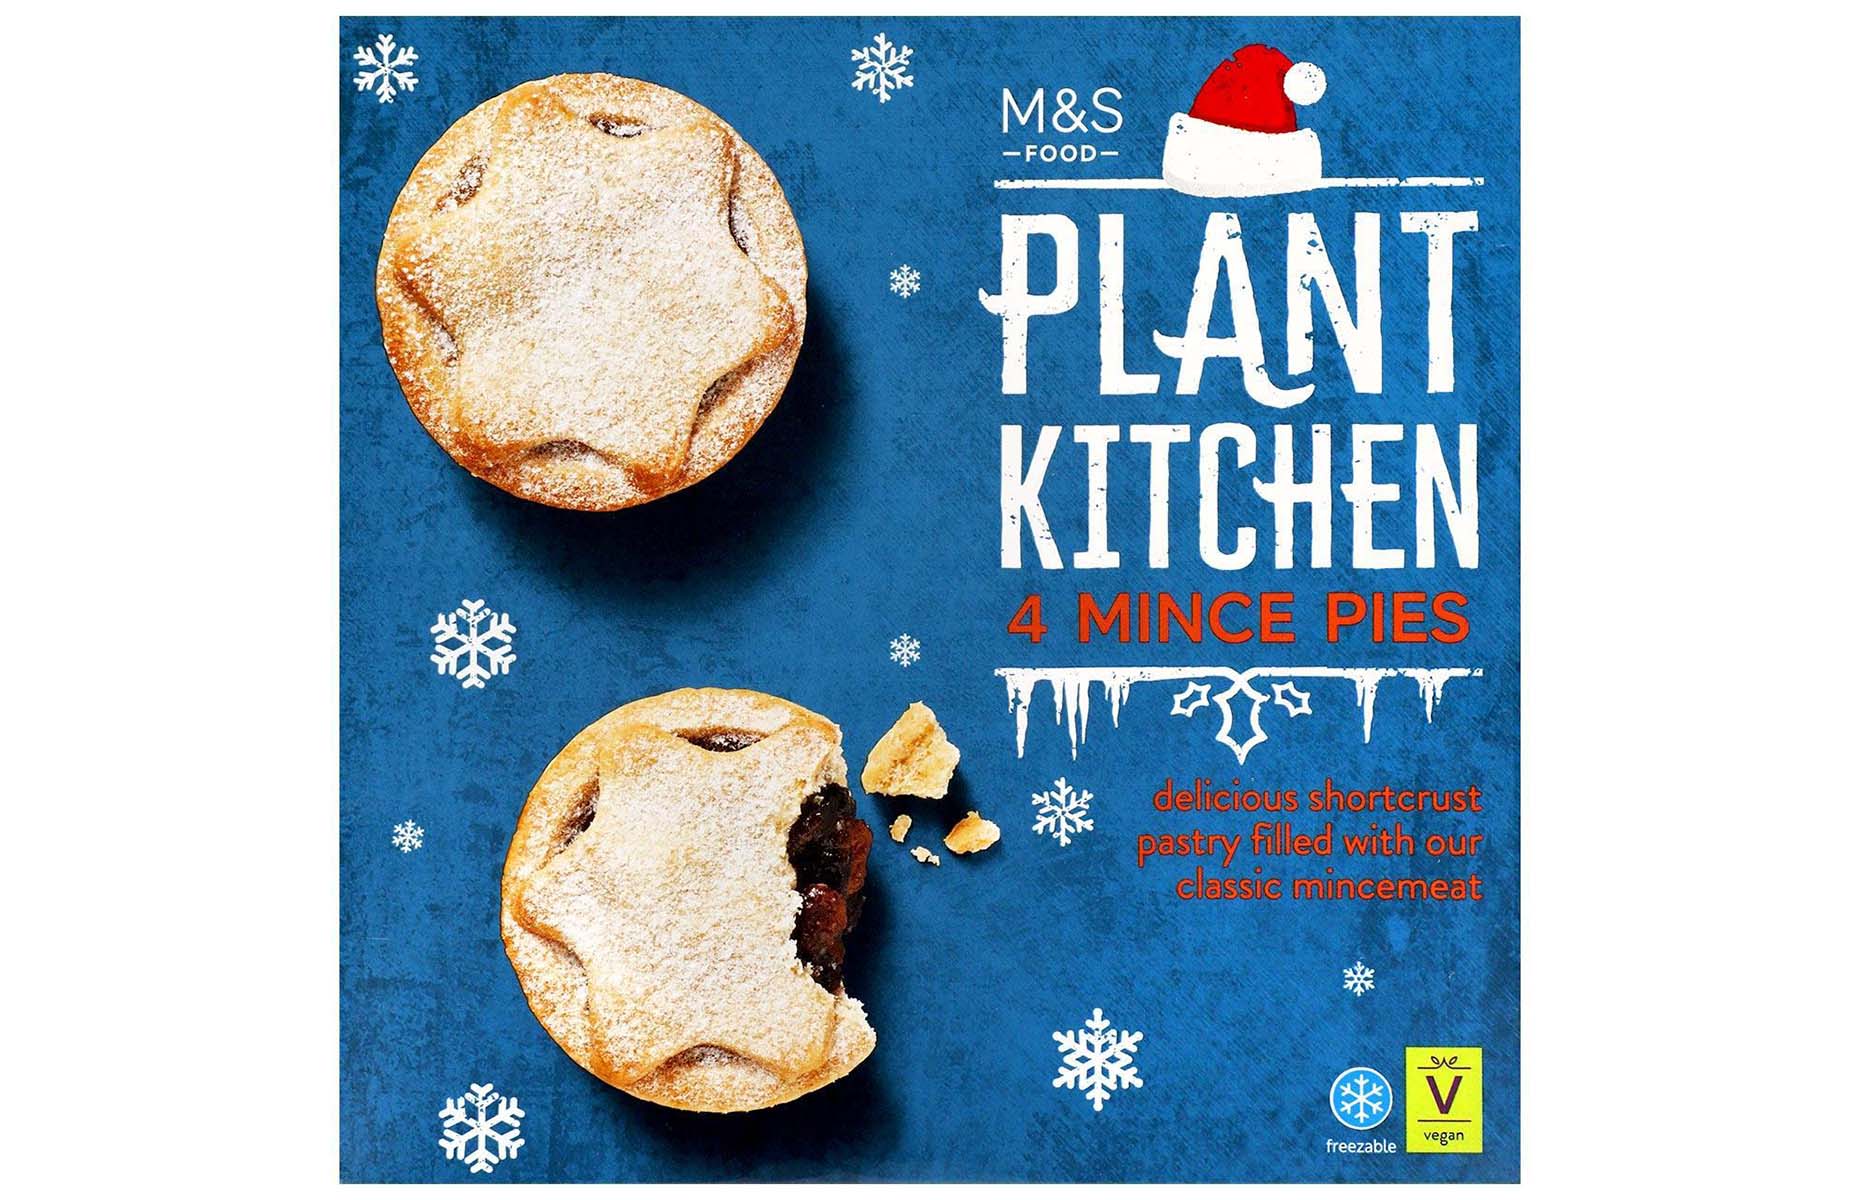 M&S Plant Kitchen vegan mince pies 2021